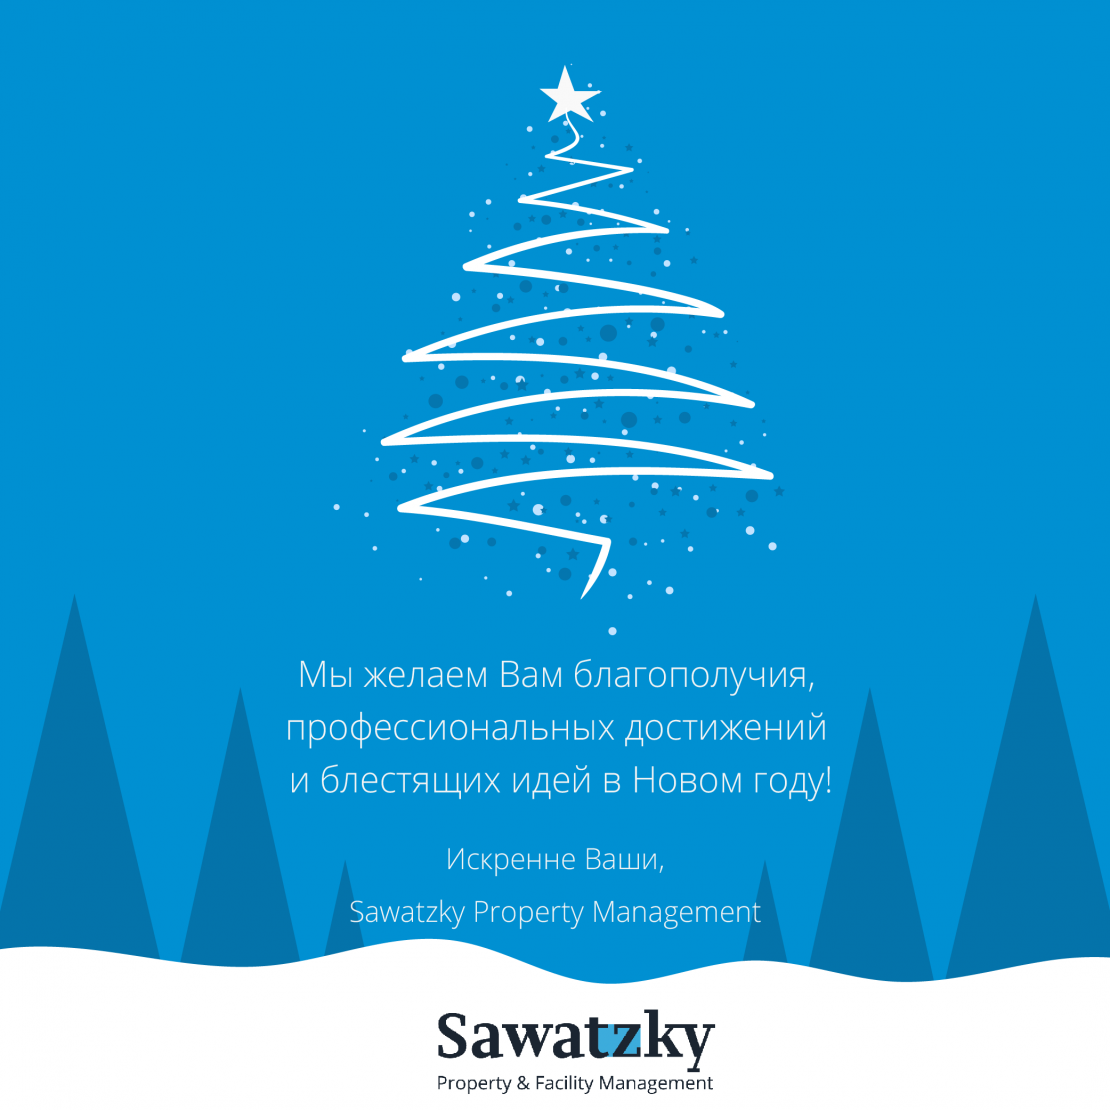 Sawatzky Property Management поздравляет Вас с Новым Годом!